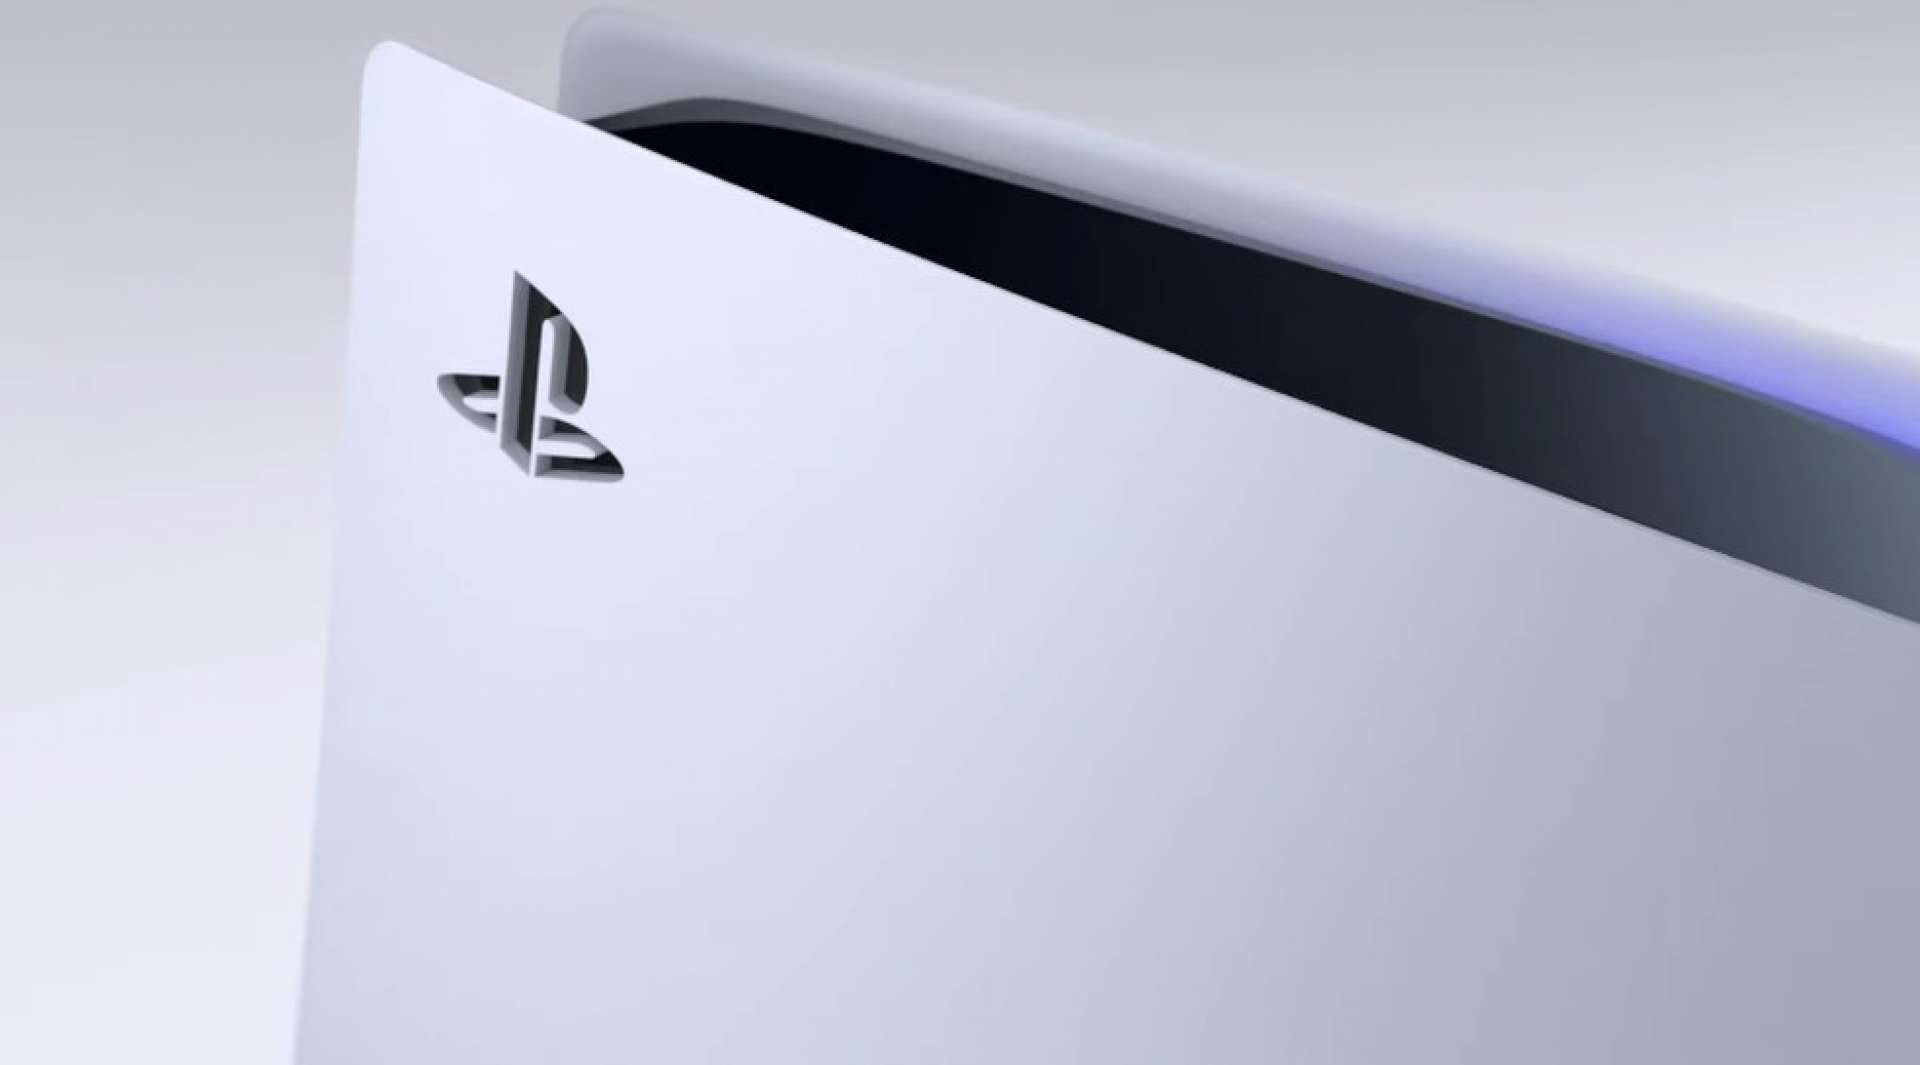 PlayStation adia seis jogos exclusivos em produção; veja motivo